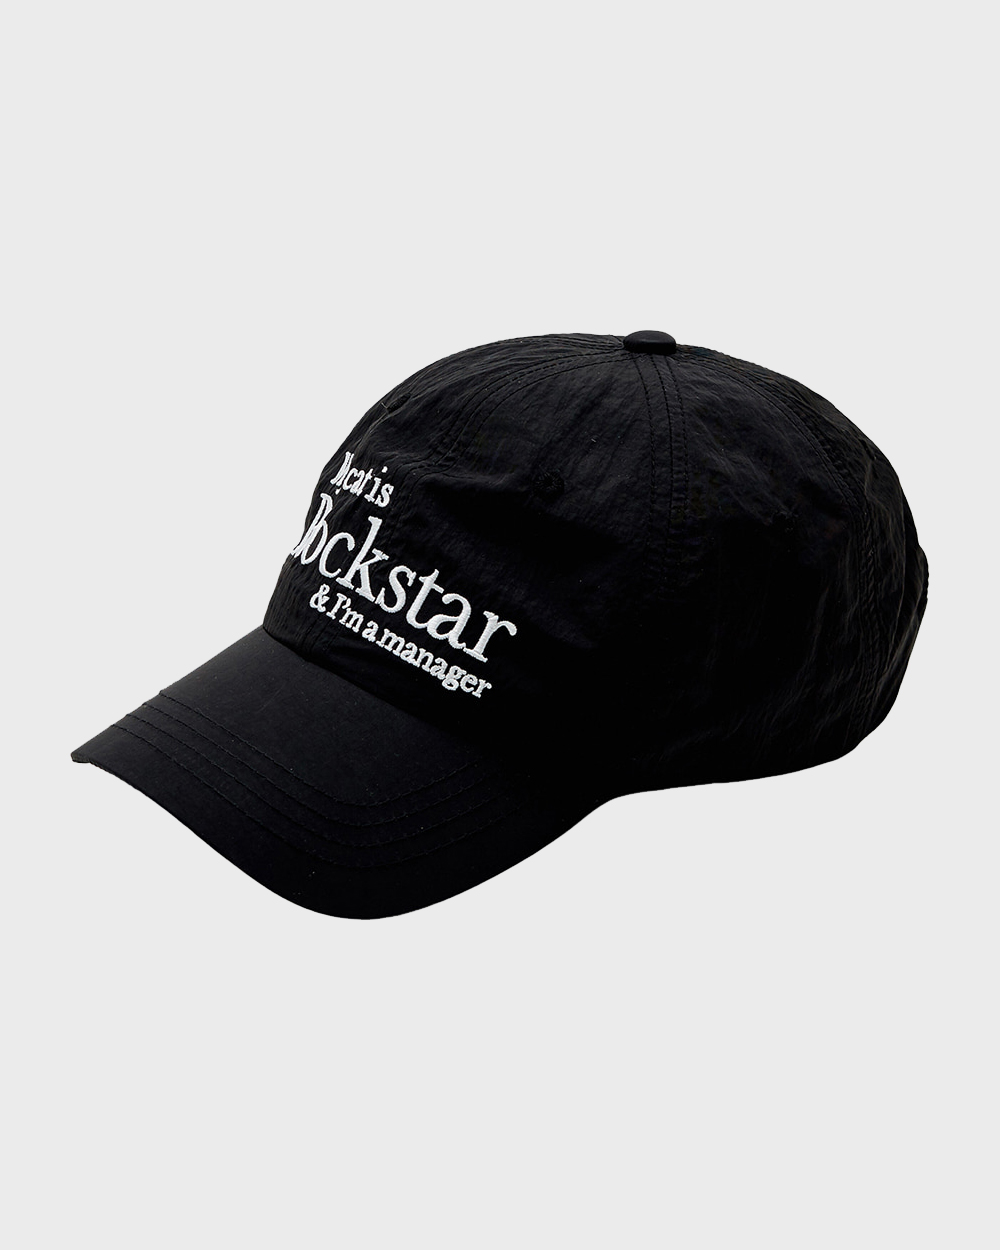 조거쉬 Rockstar cat cap (Black)